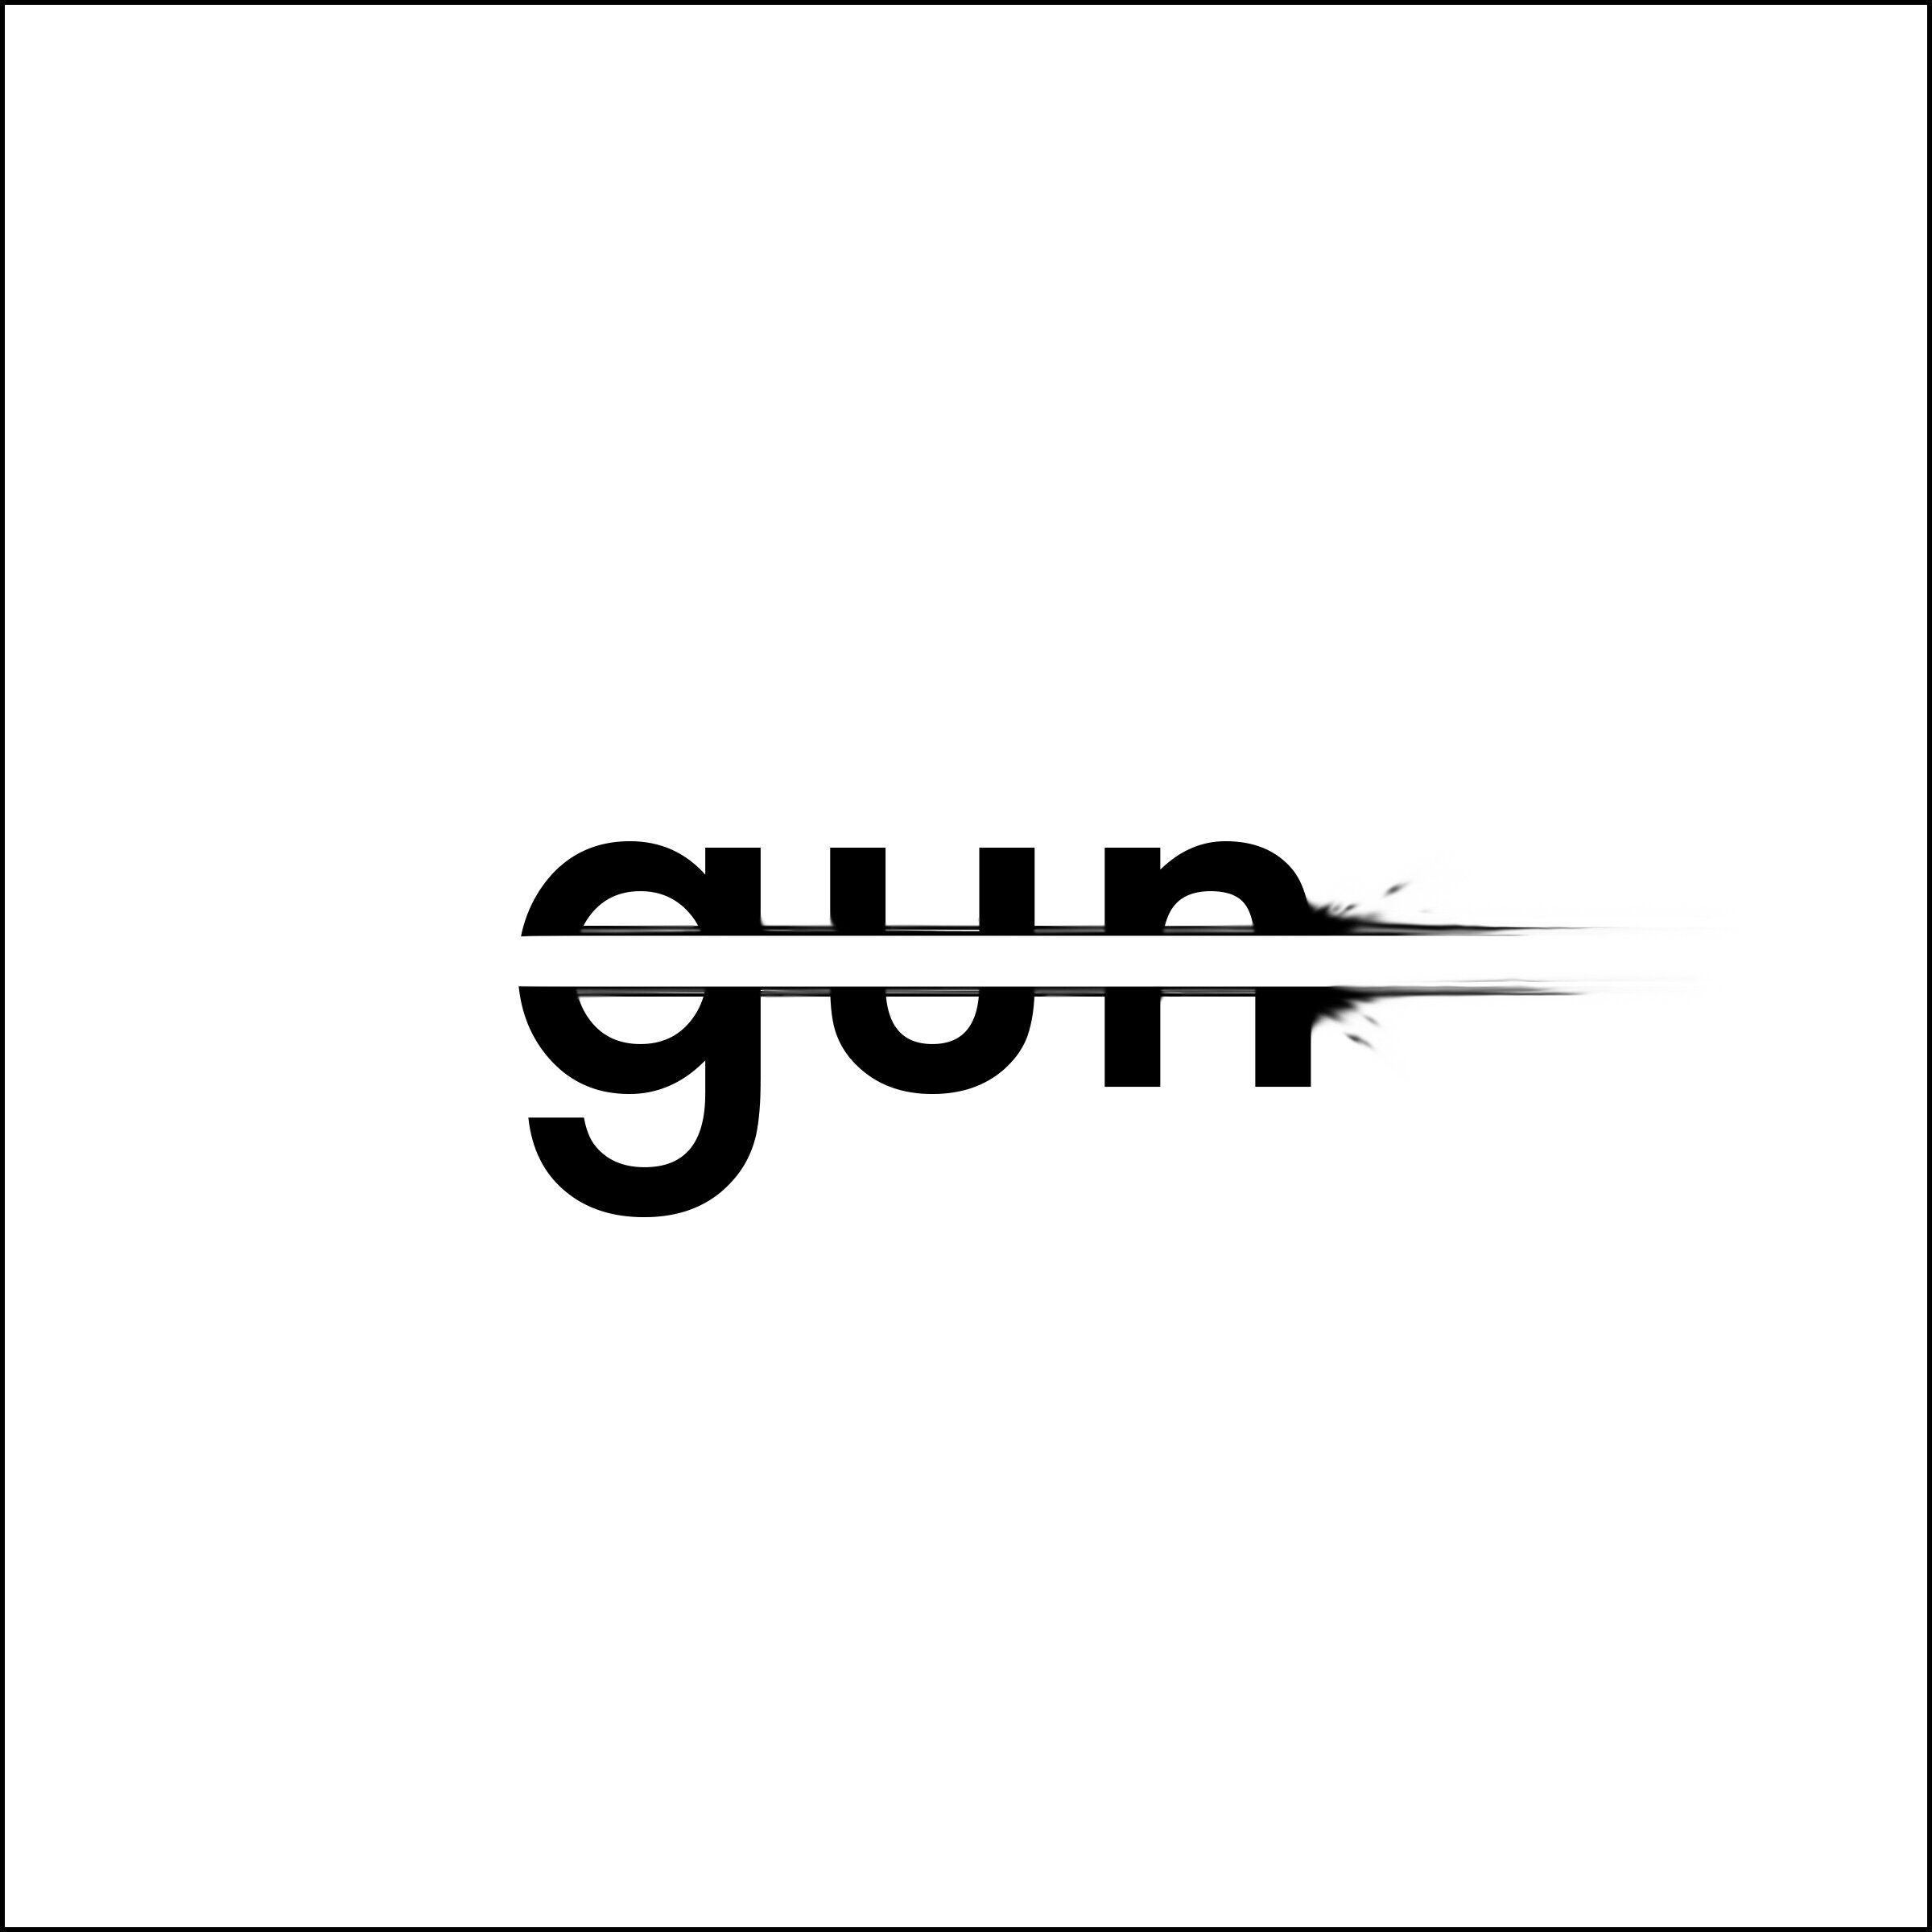 paul kisling – "gun" firing